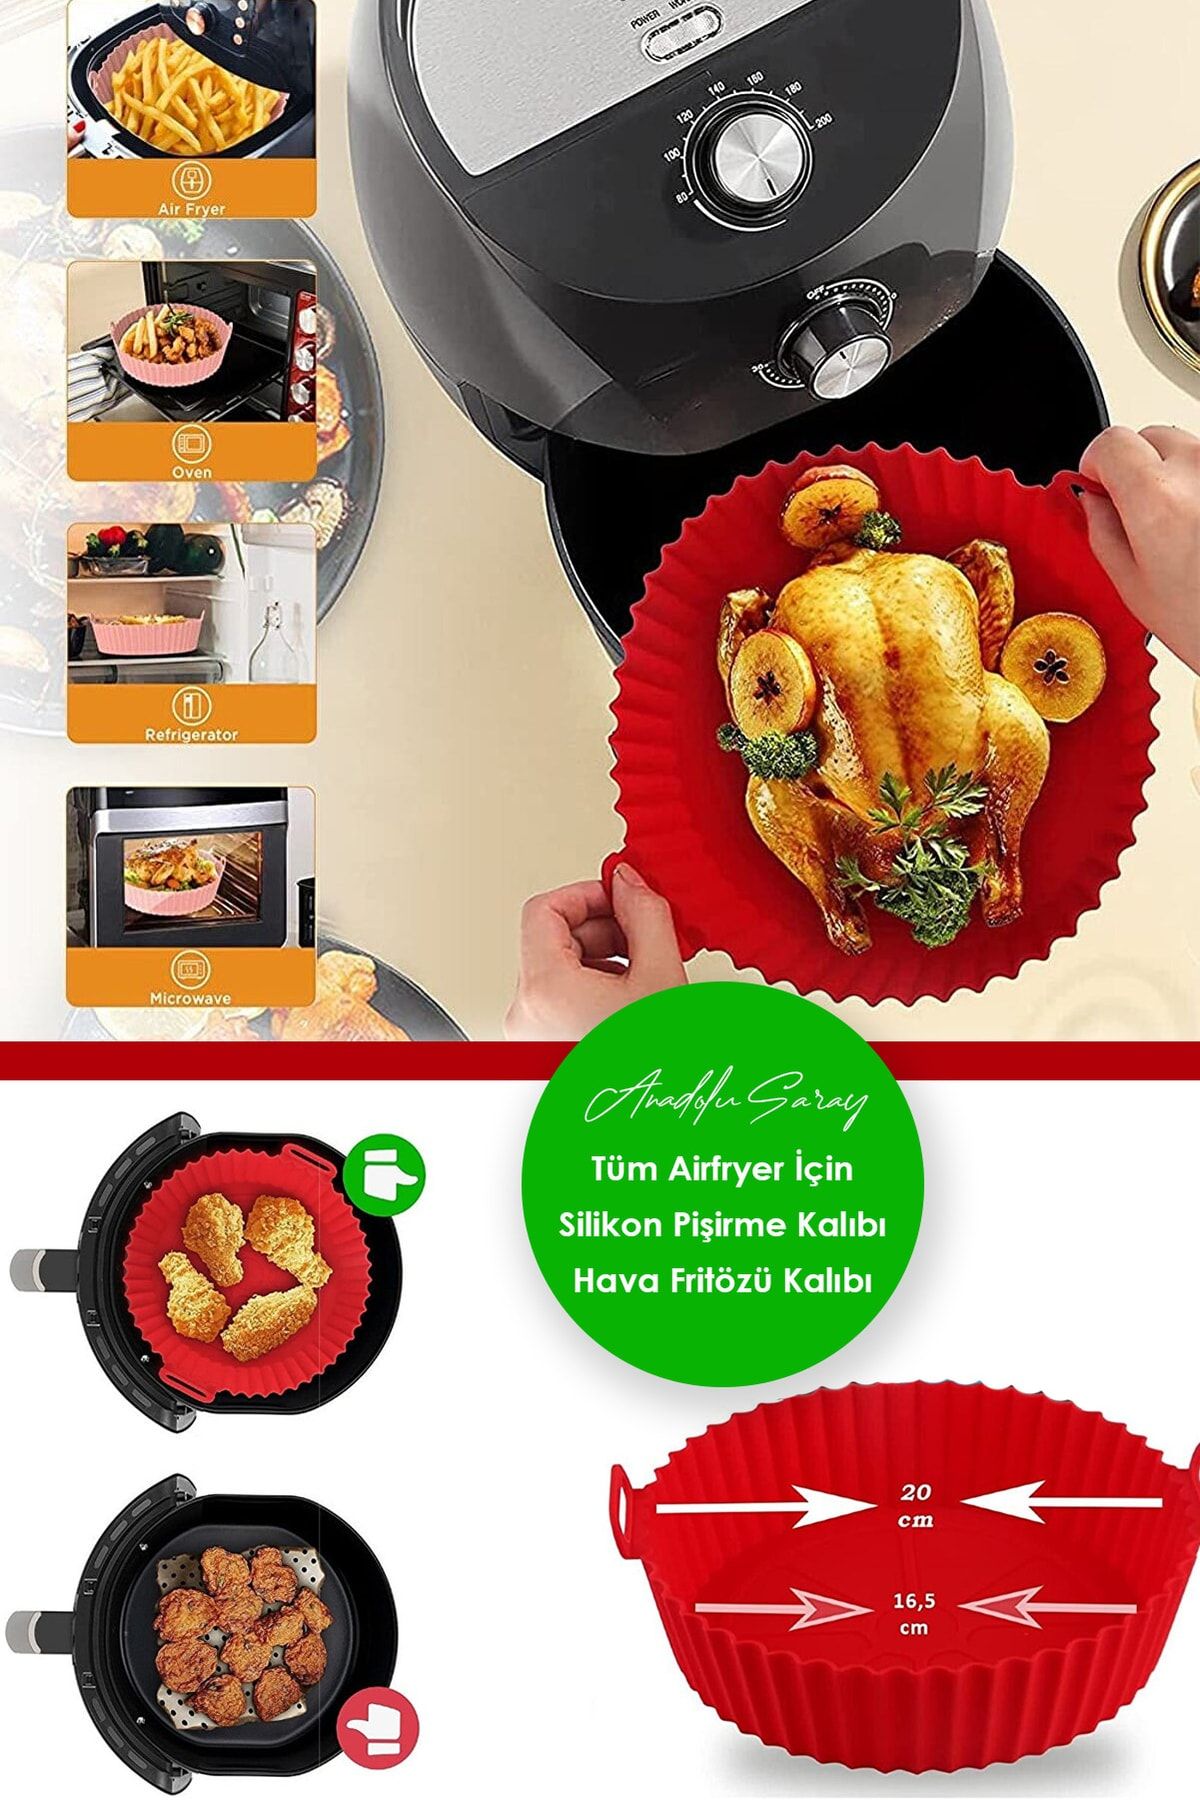 Anadolu Saray Çarşısı Tüm Airfryerler Ile Uyumlu Airfryer Silikon Pişirme Kalıbı Hava Fritözü Yemek Pişirme Kalıbı 1 Adet